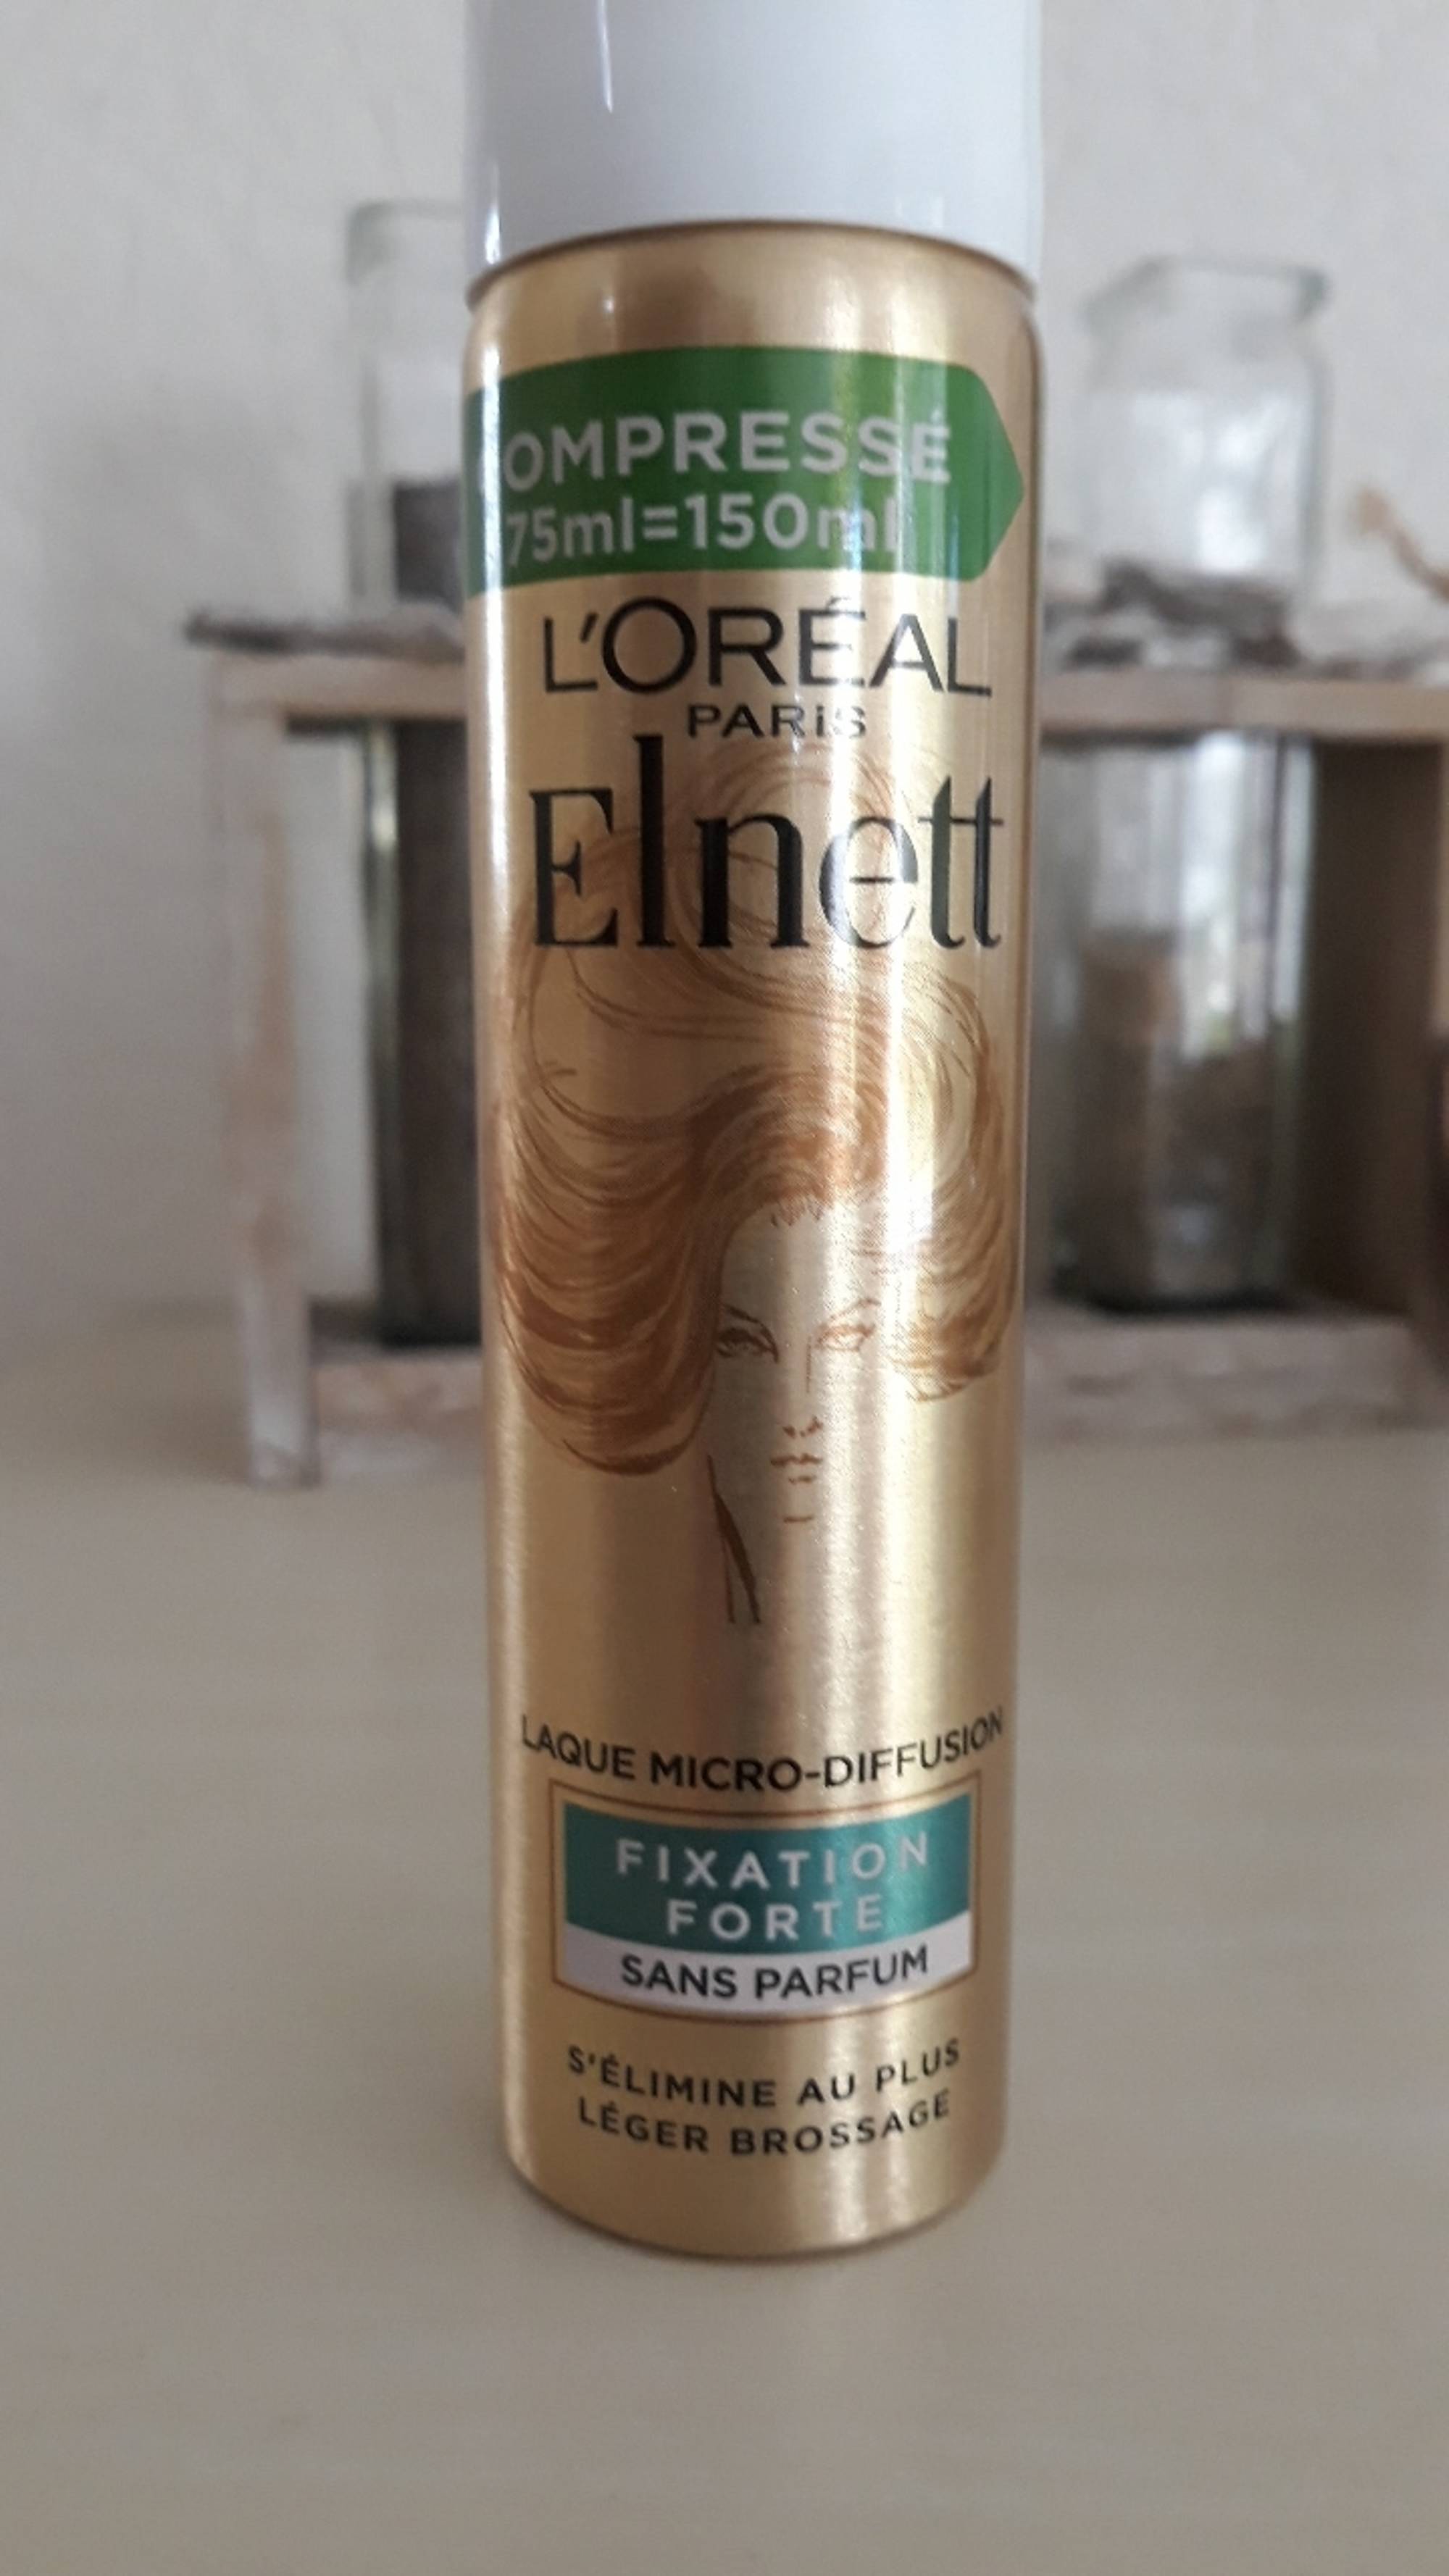 L'ORÉAL PARIS - Elnett - Laque micro-diffusion - Fixation forte - Sans parfum 